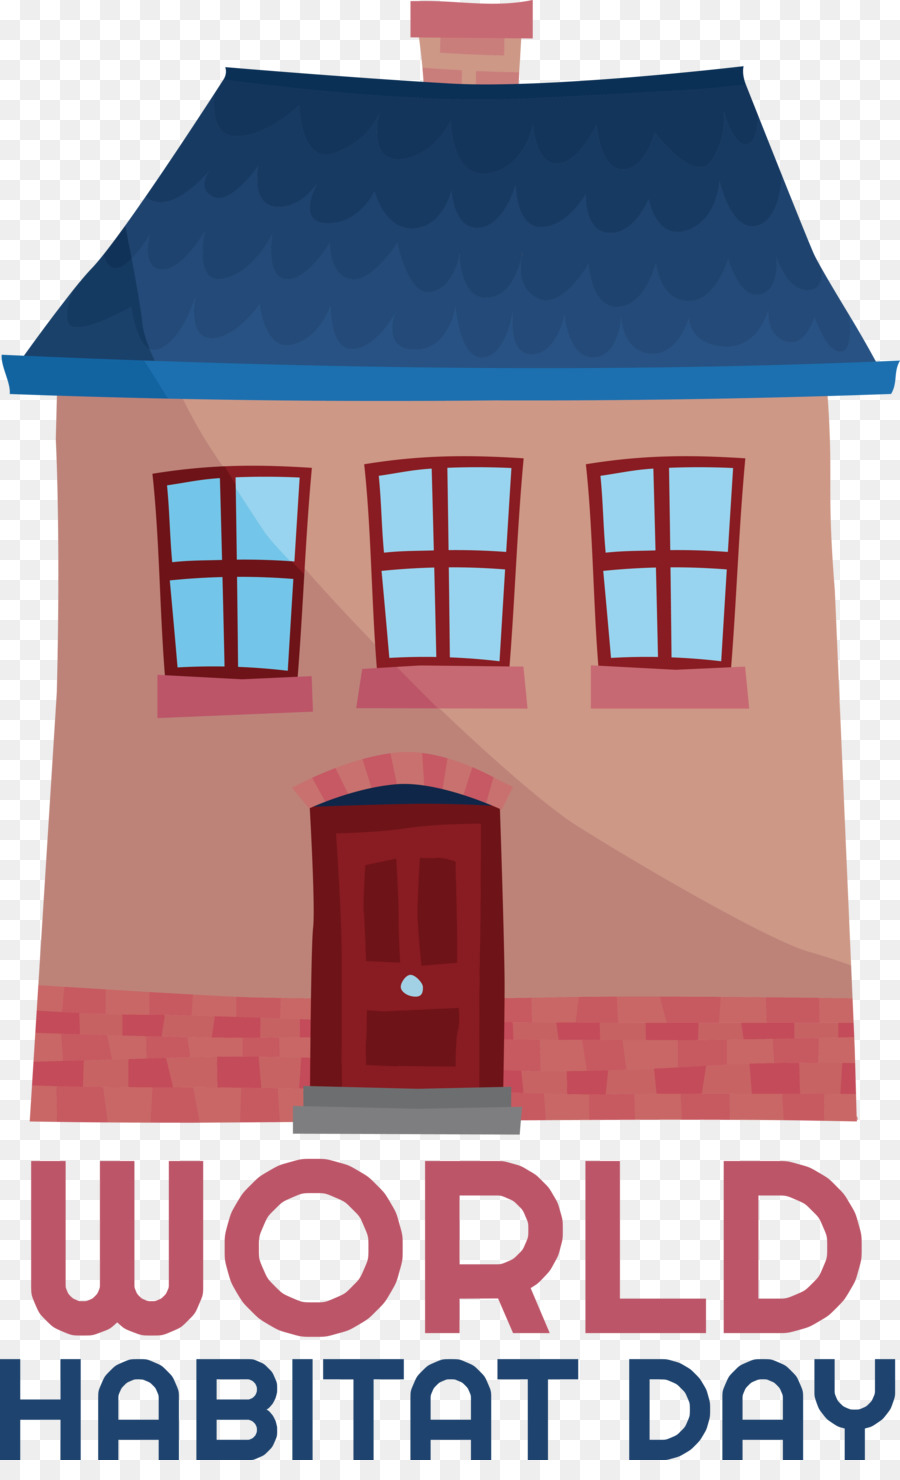 Poster Habitat House Logo Society - 